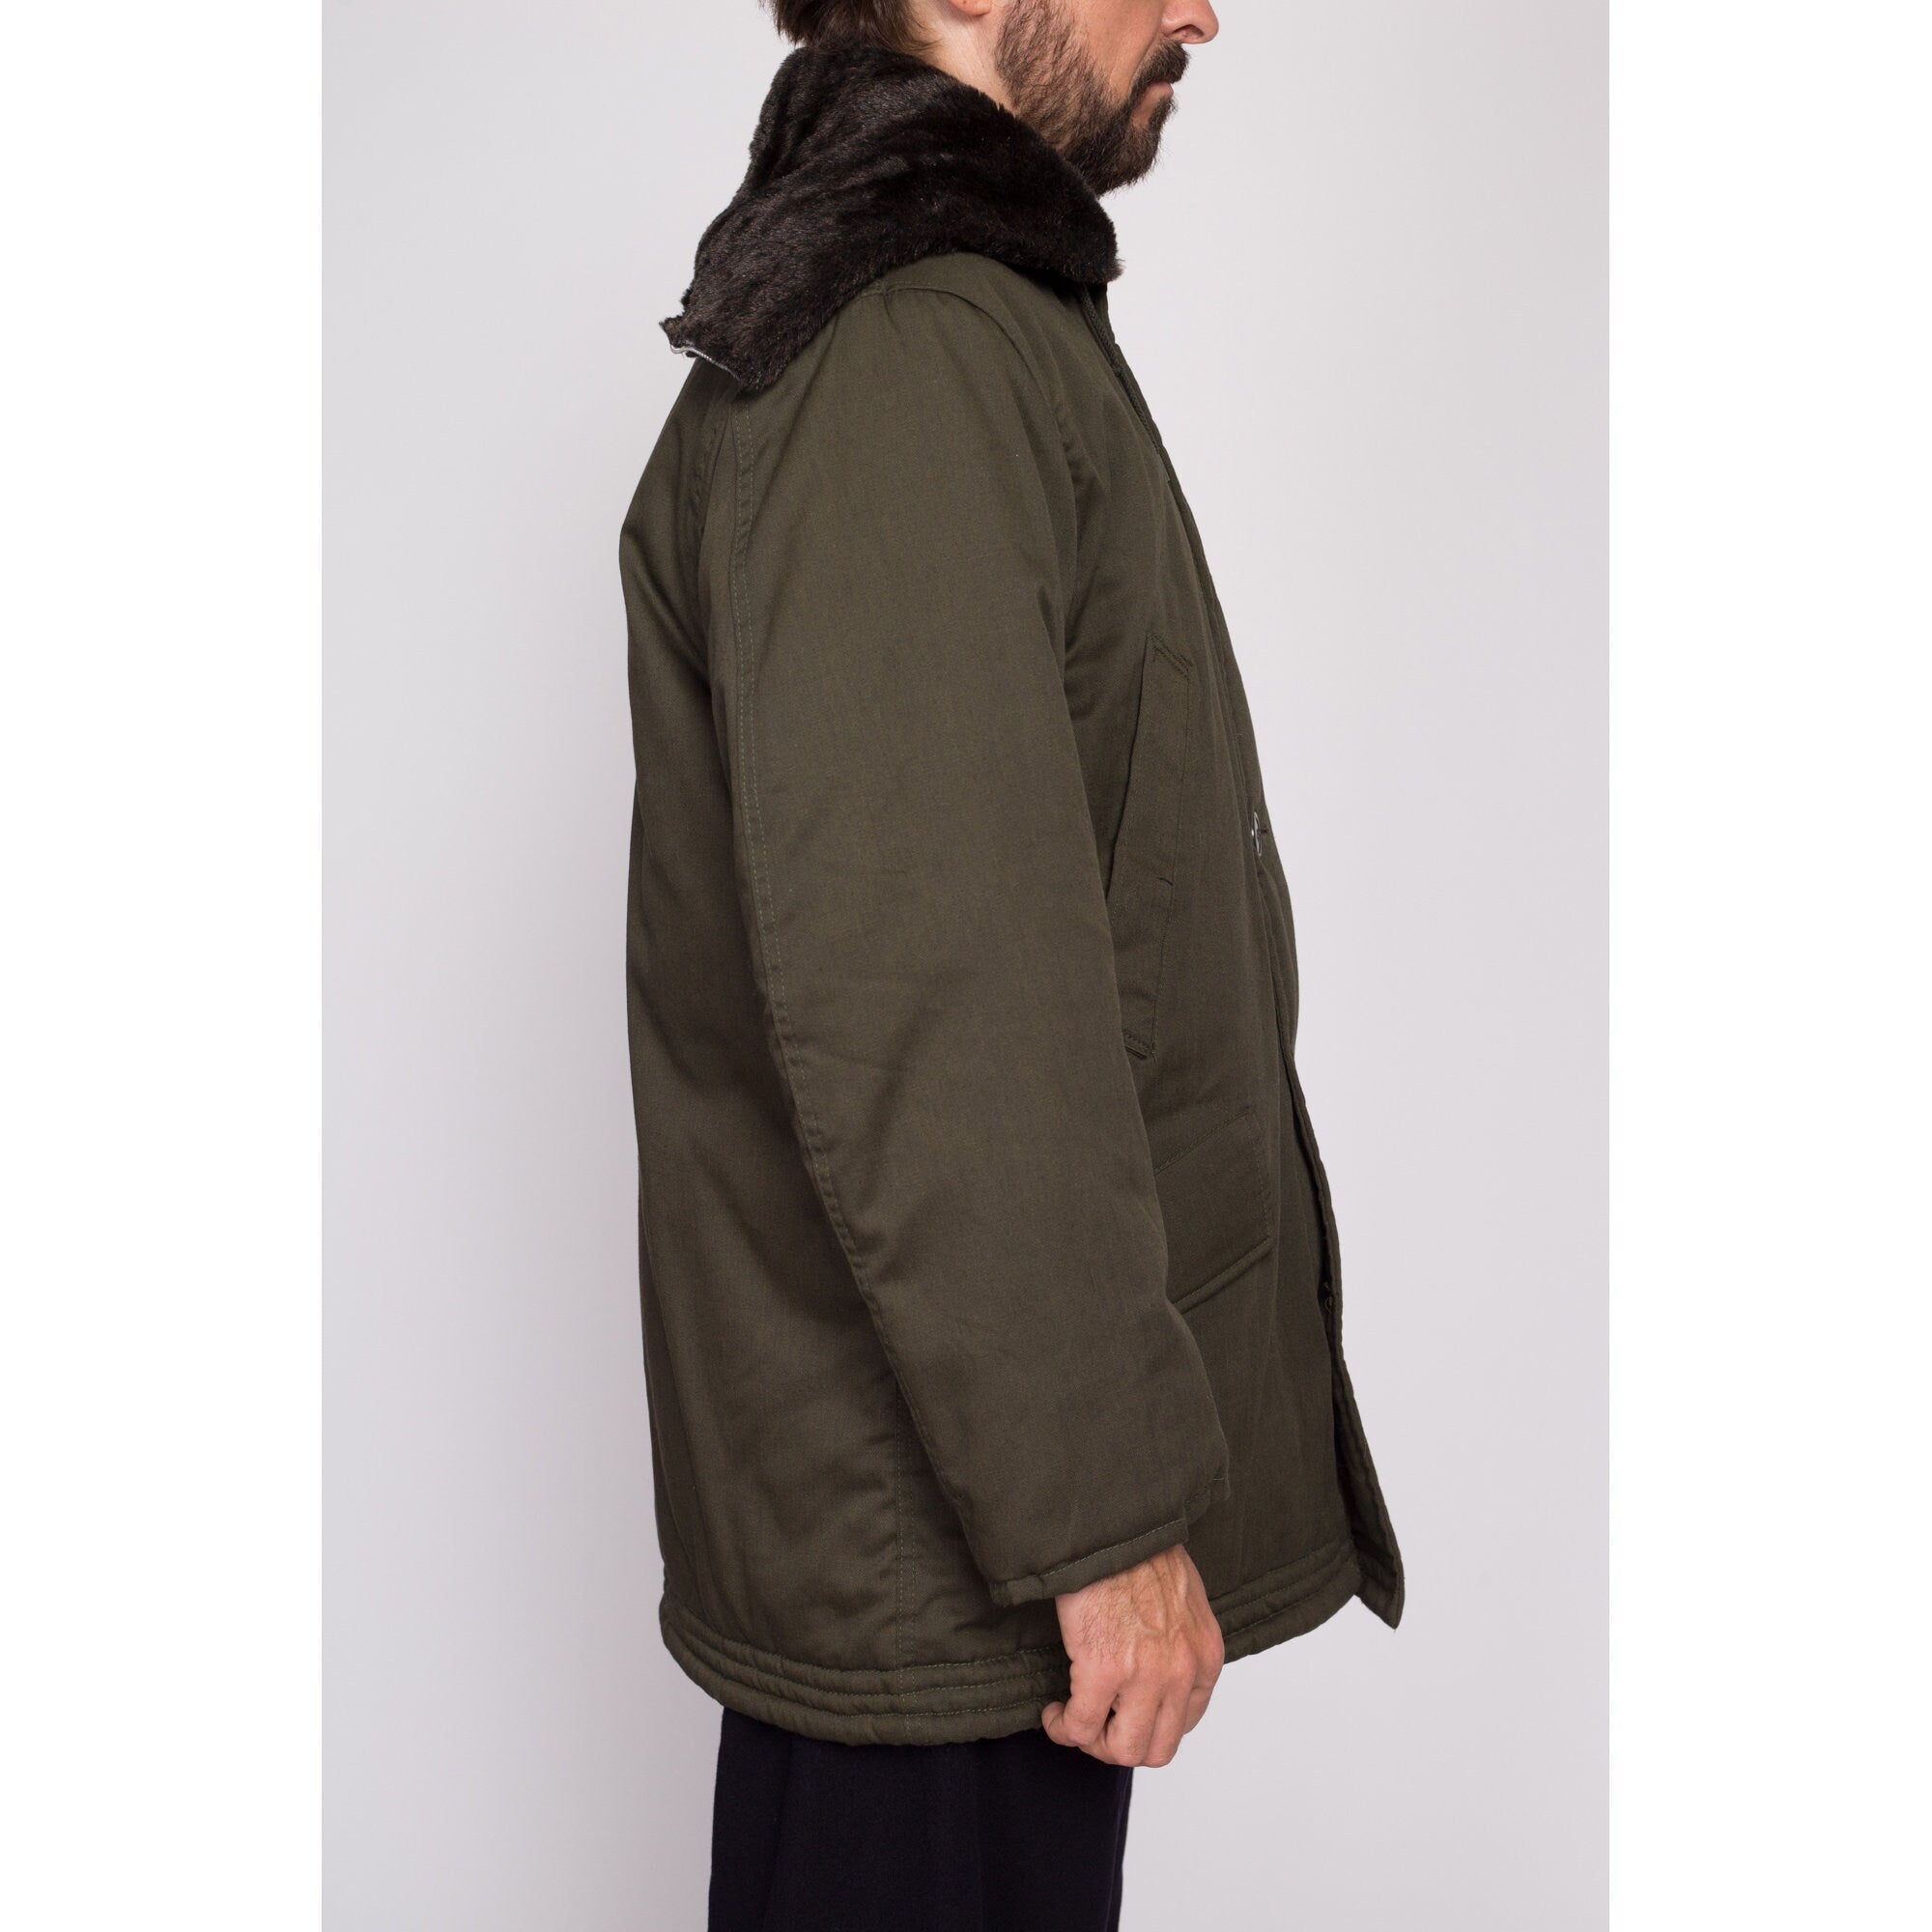 80s Golden Fleece Hooded Army Green Parka Jacket - Men's Medium Short